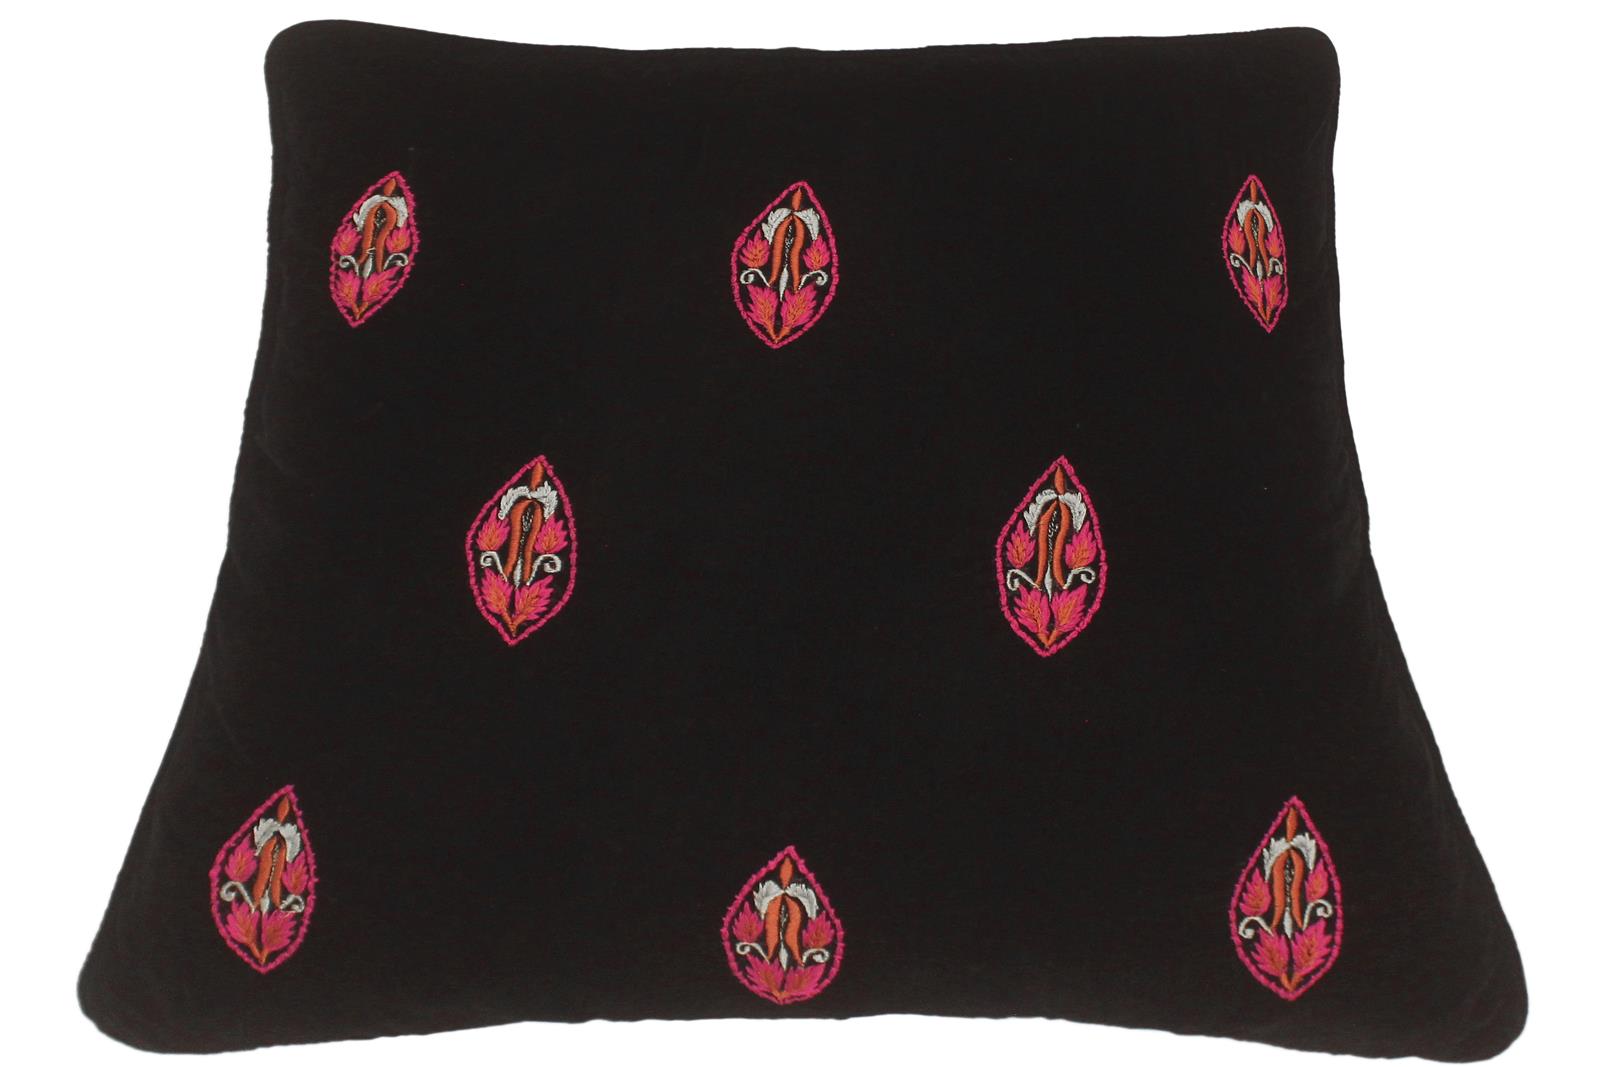 handmade  Pillow Black Pink Hand-Woven SQUARE VELVET EMBR pillow